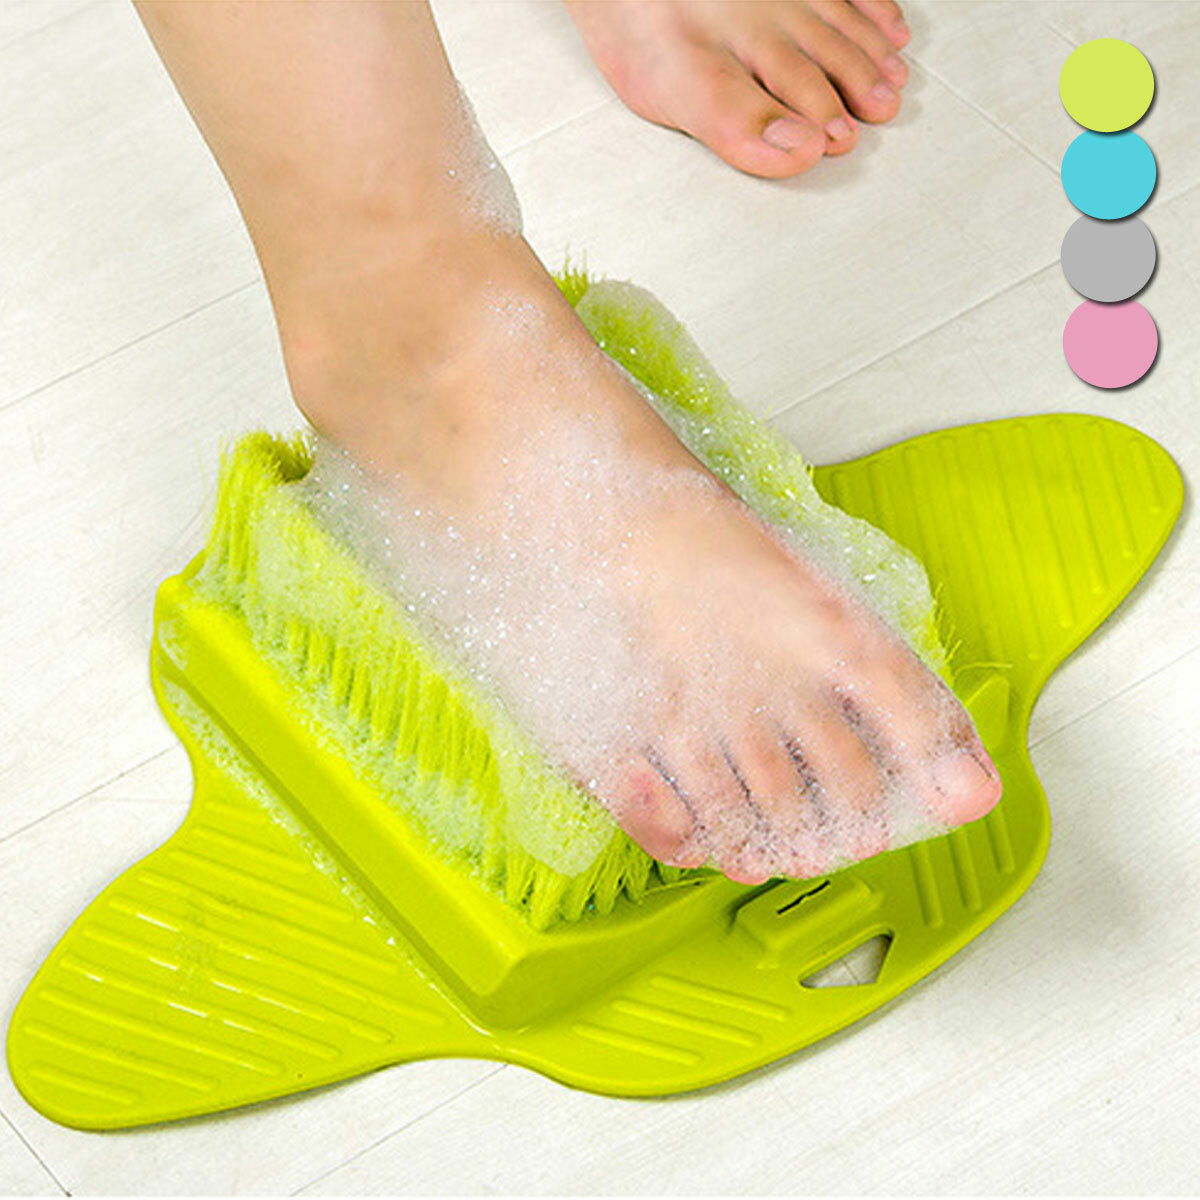 

Bath Foot Cleaner Scrub Brush Bath Shower ToolExfoliating Feet Scrubber Bath Cleaning Tool, Grey;blue;green